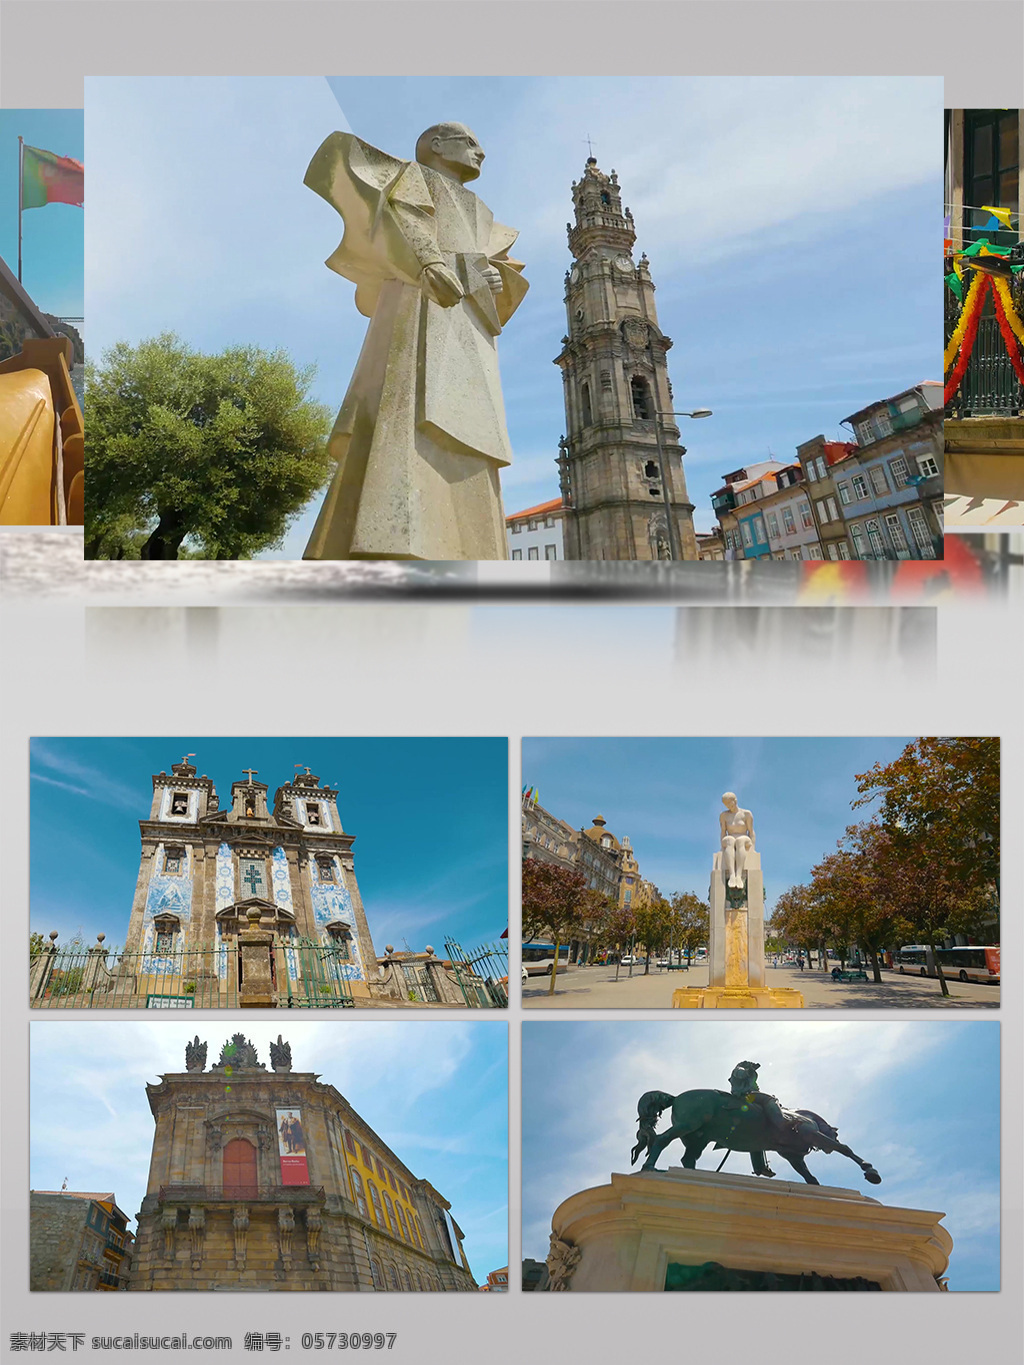 4k 欧洲 建筑 典雅 城市 风光 人文 旅游景观 旅游 复古 地标 雕塑 历史遗迹 景观